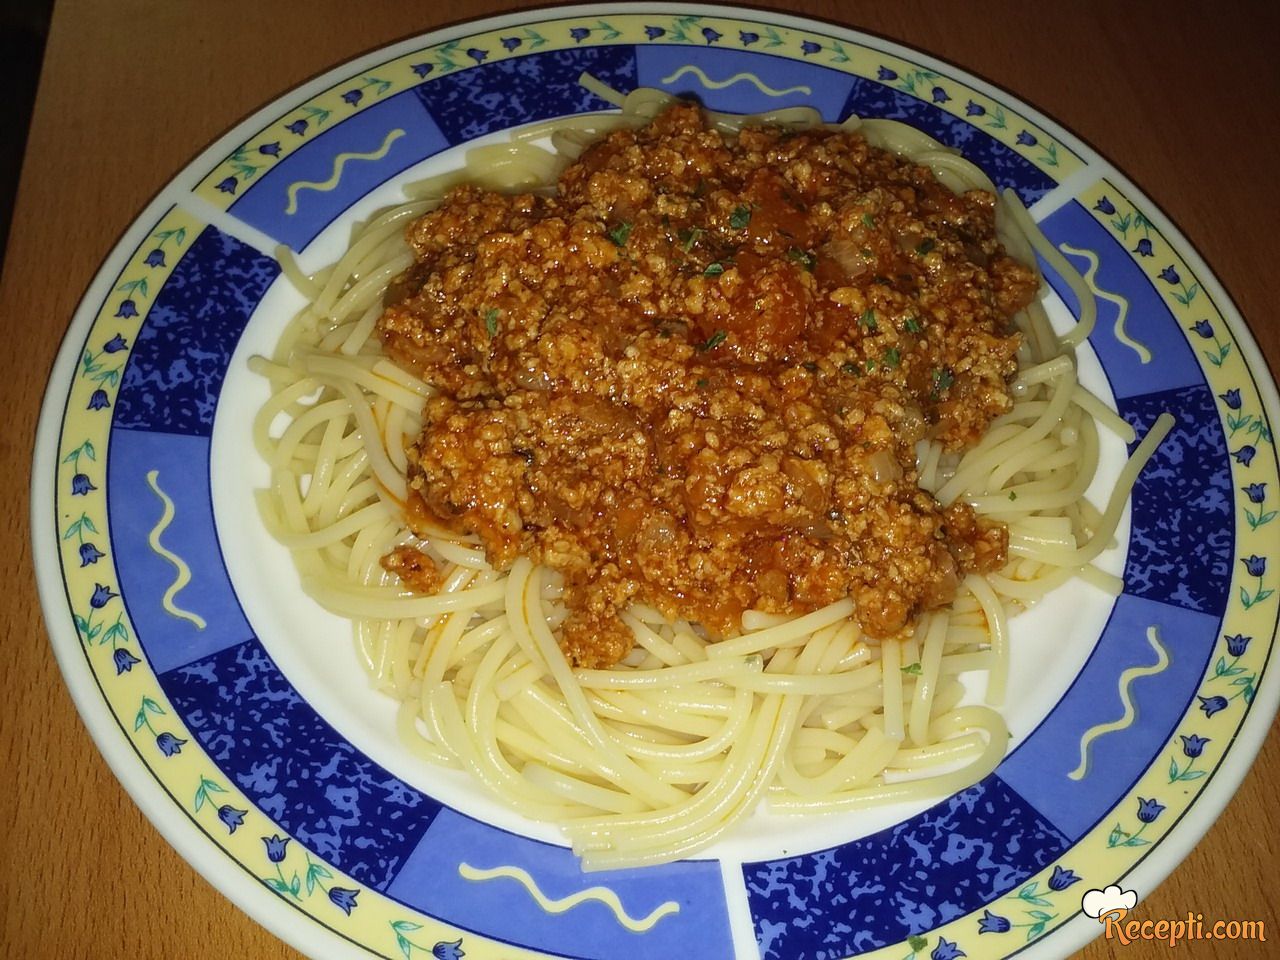 Špageti bolognese (bolonjez) na moj način